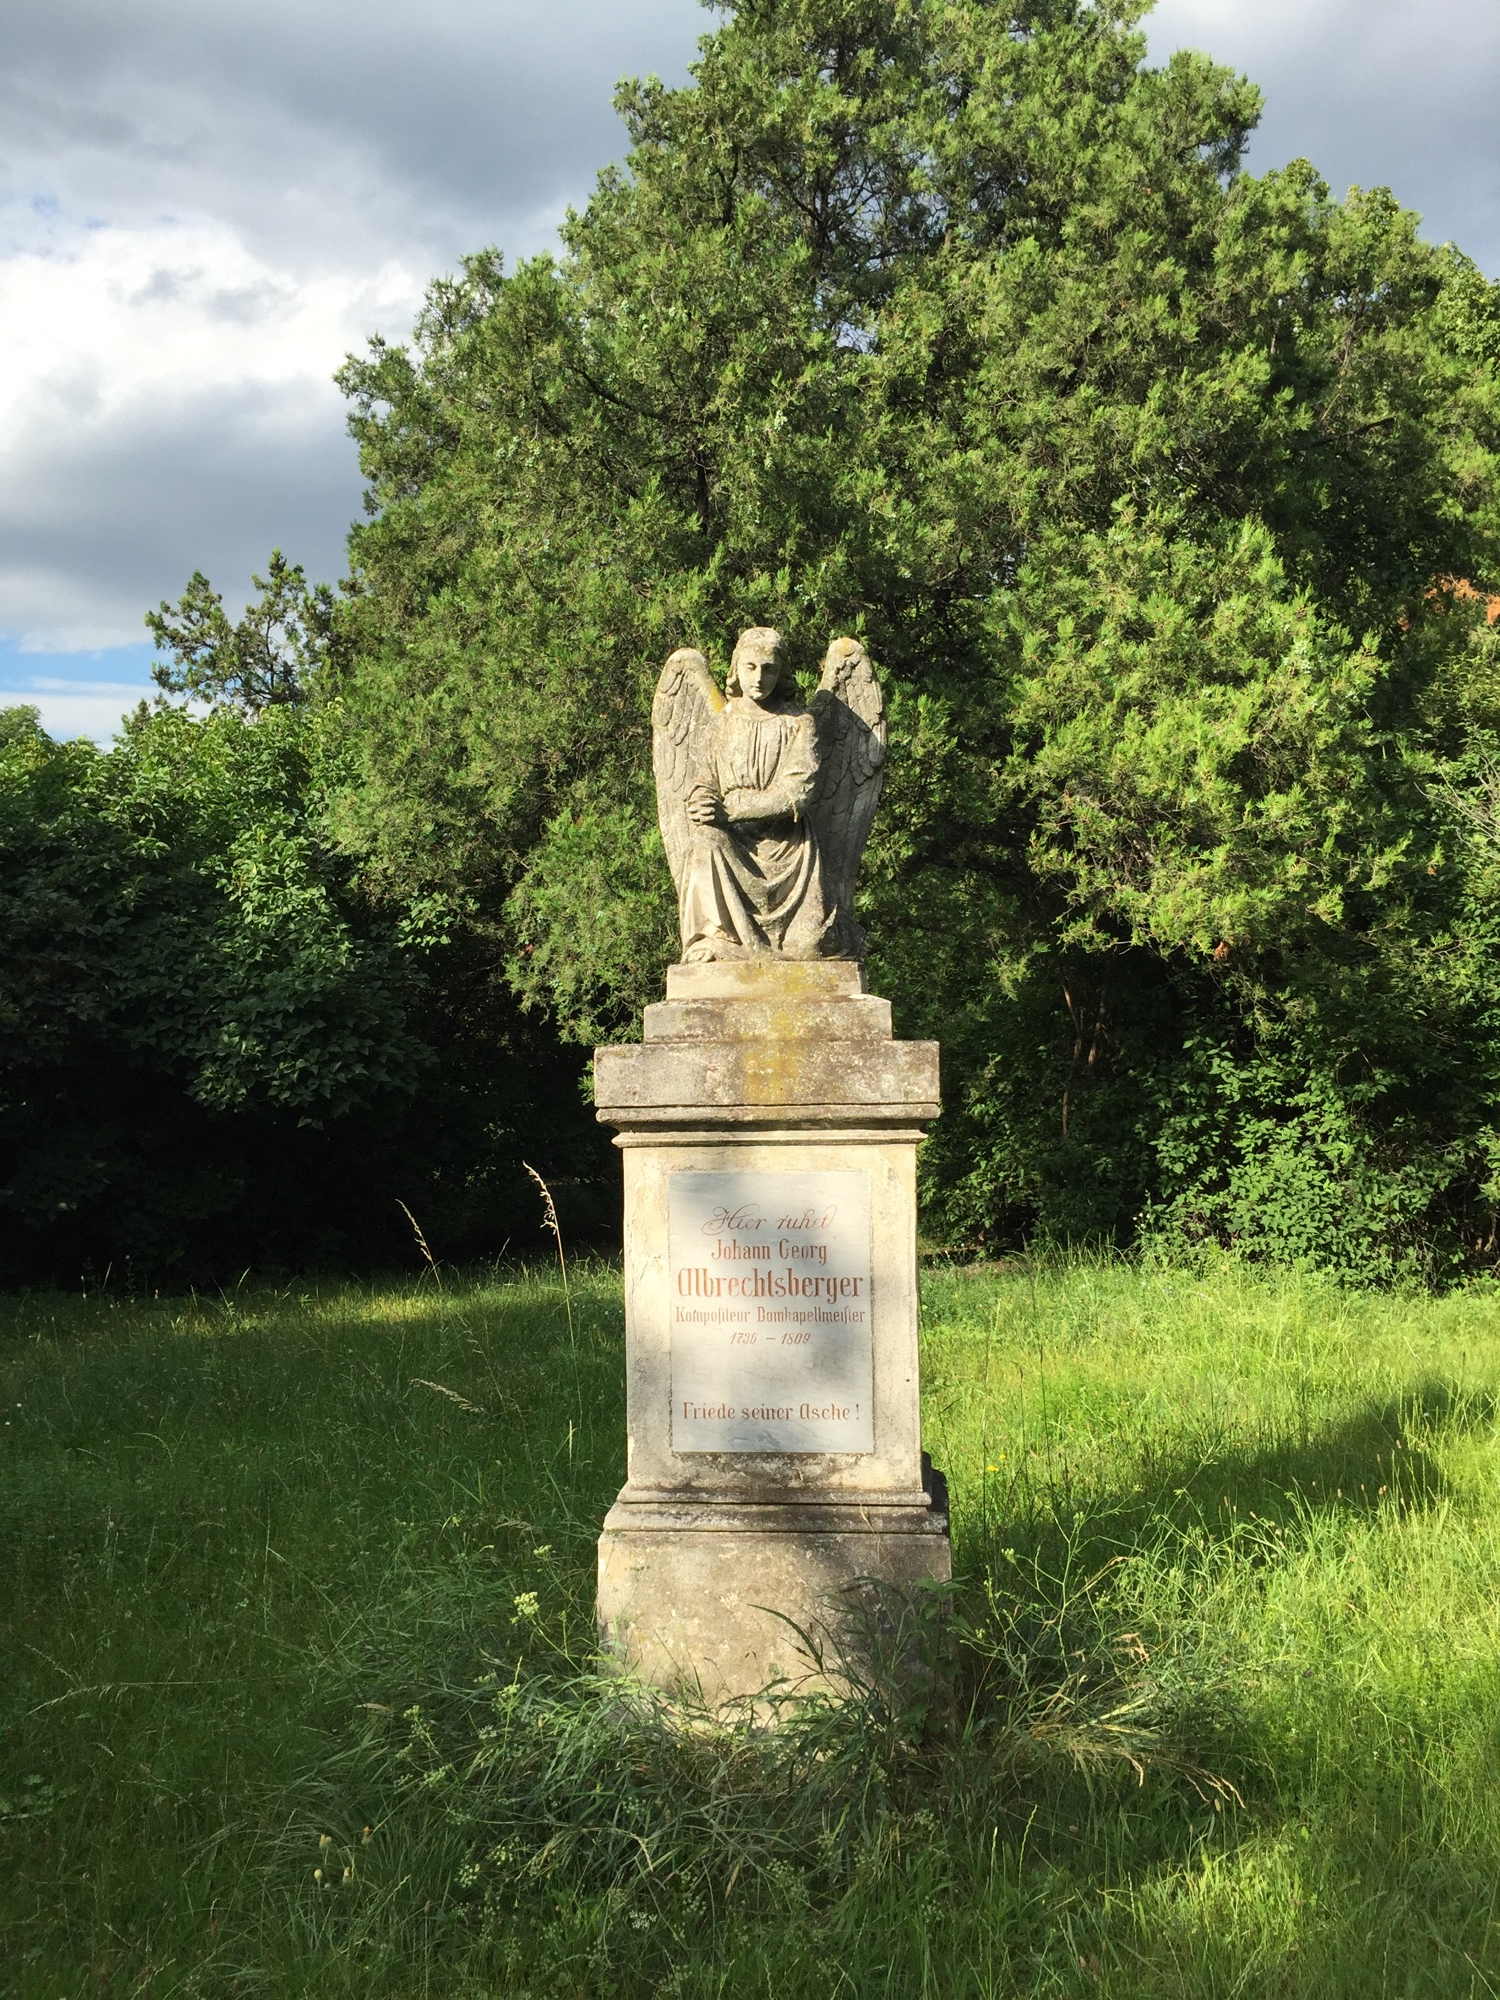 das Grabmal des Komponisten Johann Georg Albrechtsberger liegt abgelegen auf einer einsamen Lichtung und wird von einem Engel bewacht